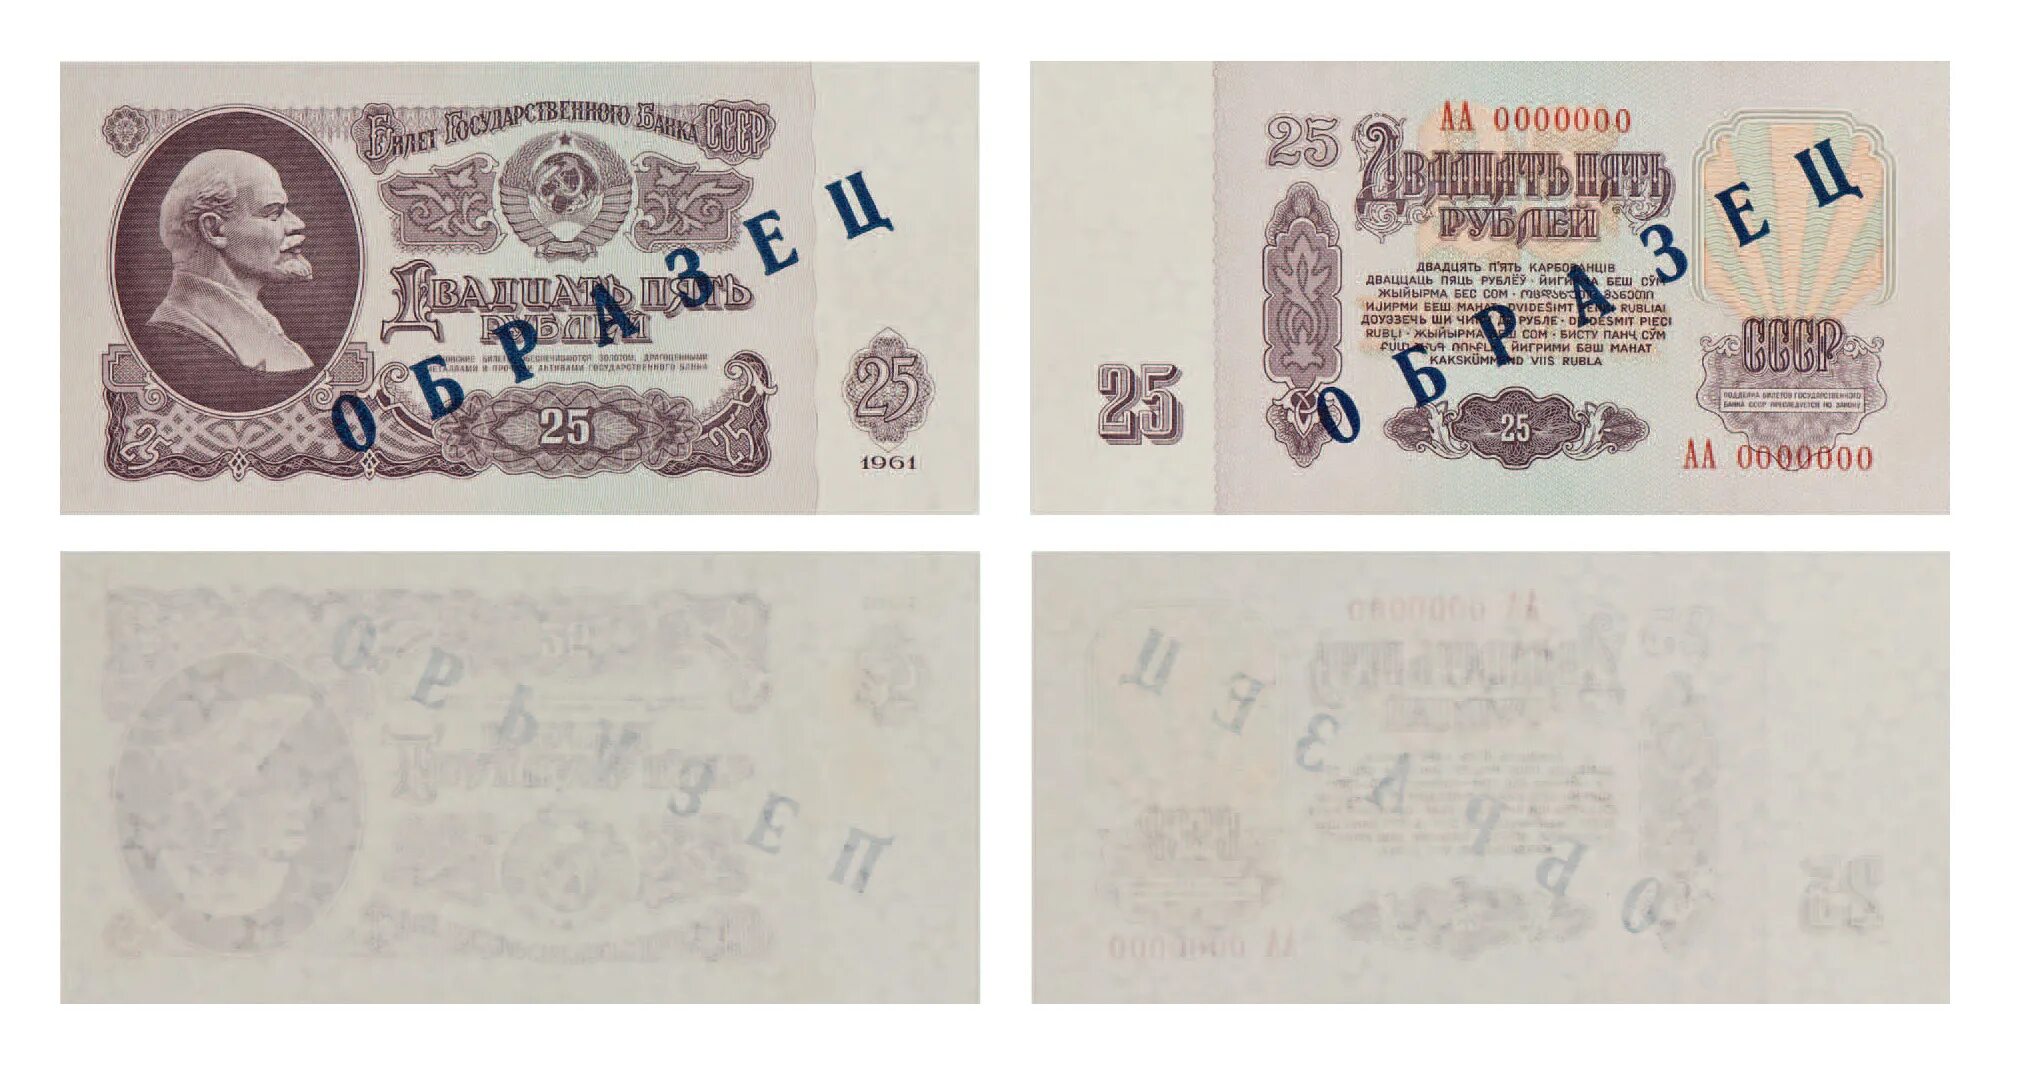 Первые 25 банков. 25 Рублей образца 1961. Открытка Советский рубль 1961. Рубль советского образца монета 1961. 1 Рубль СССР образца 1961 UNC.